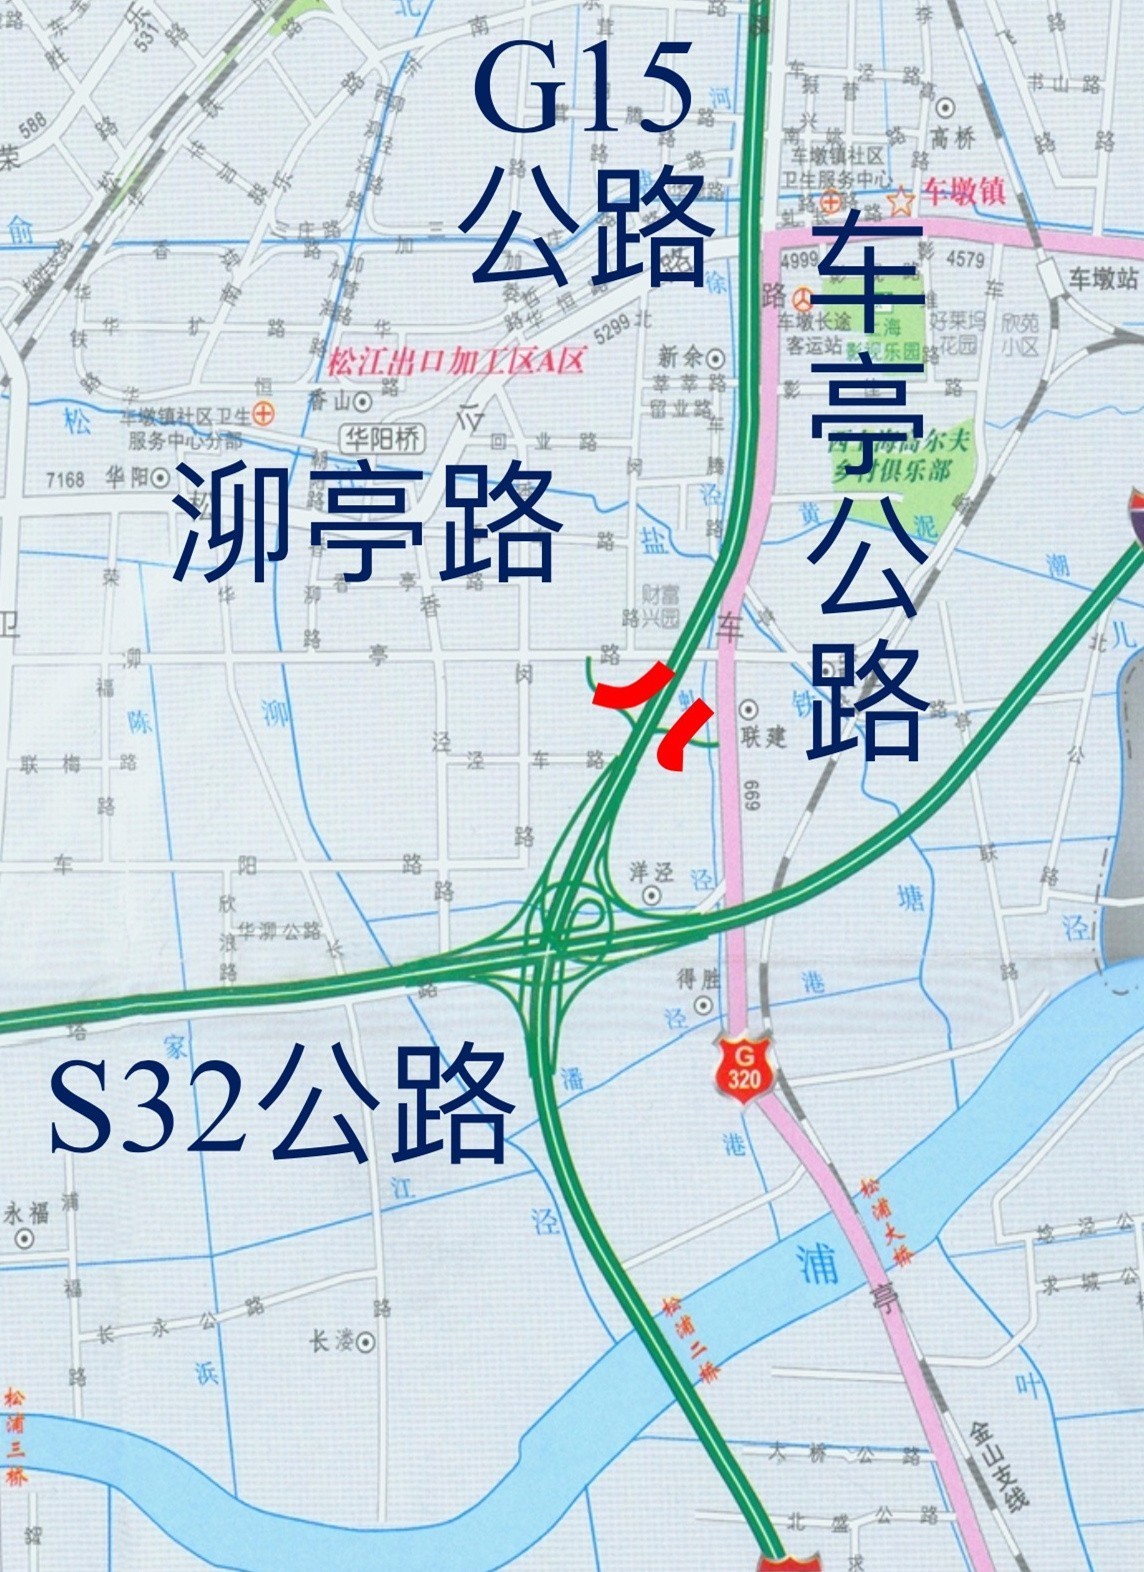 车墩新增g15上海方向匝道9月28日19时通车